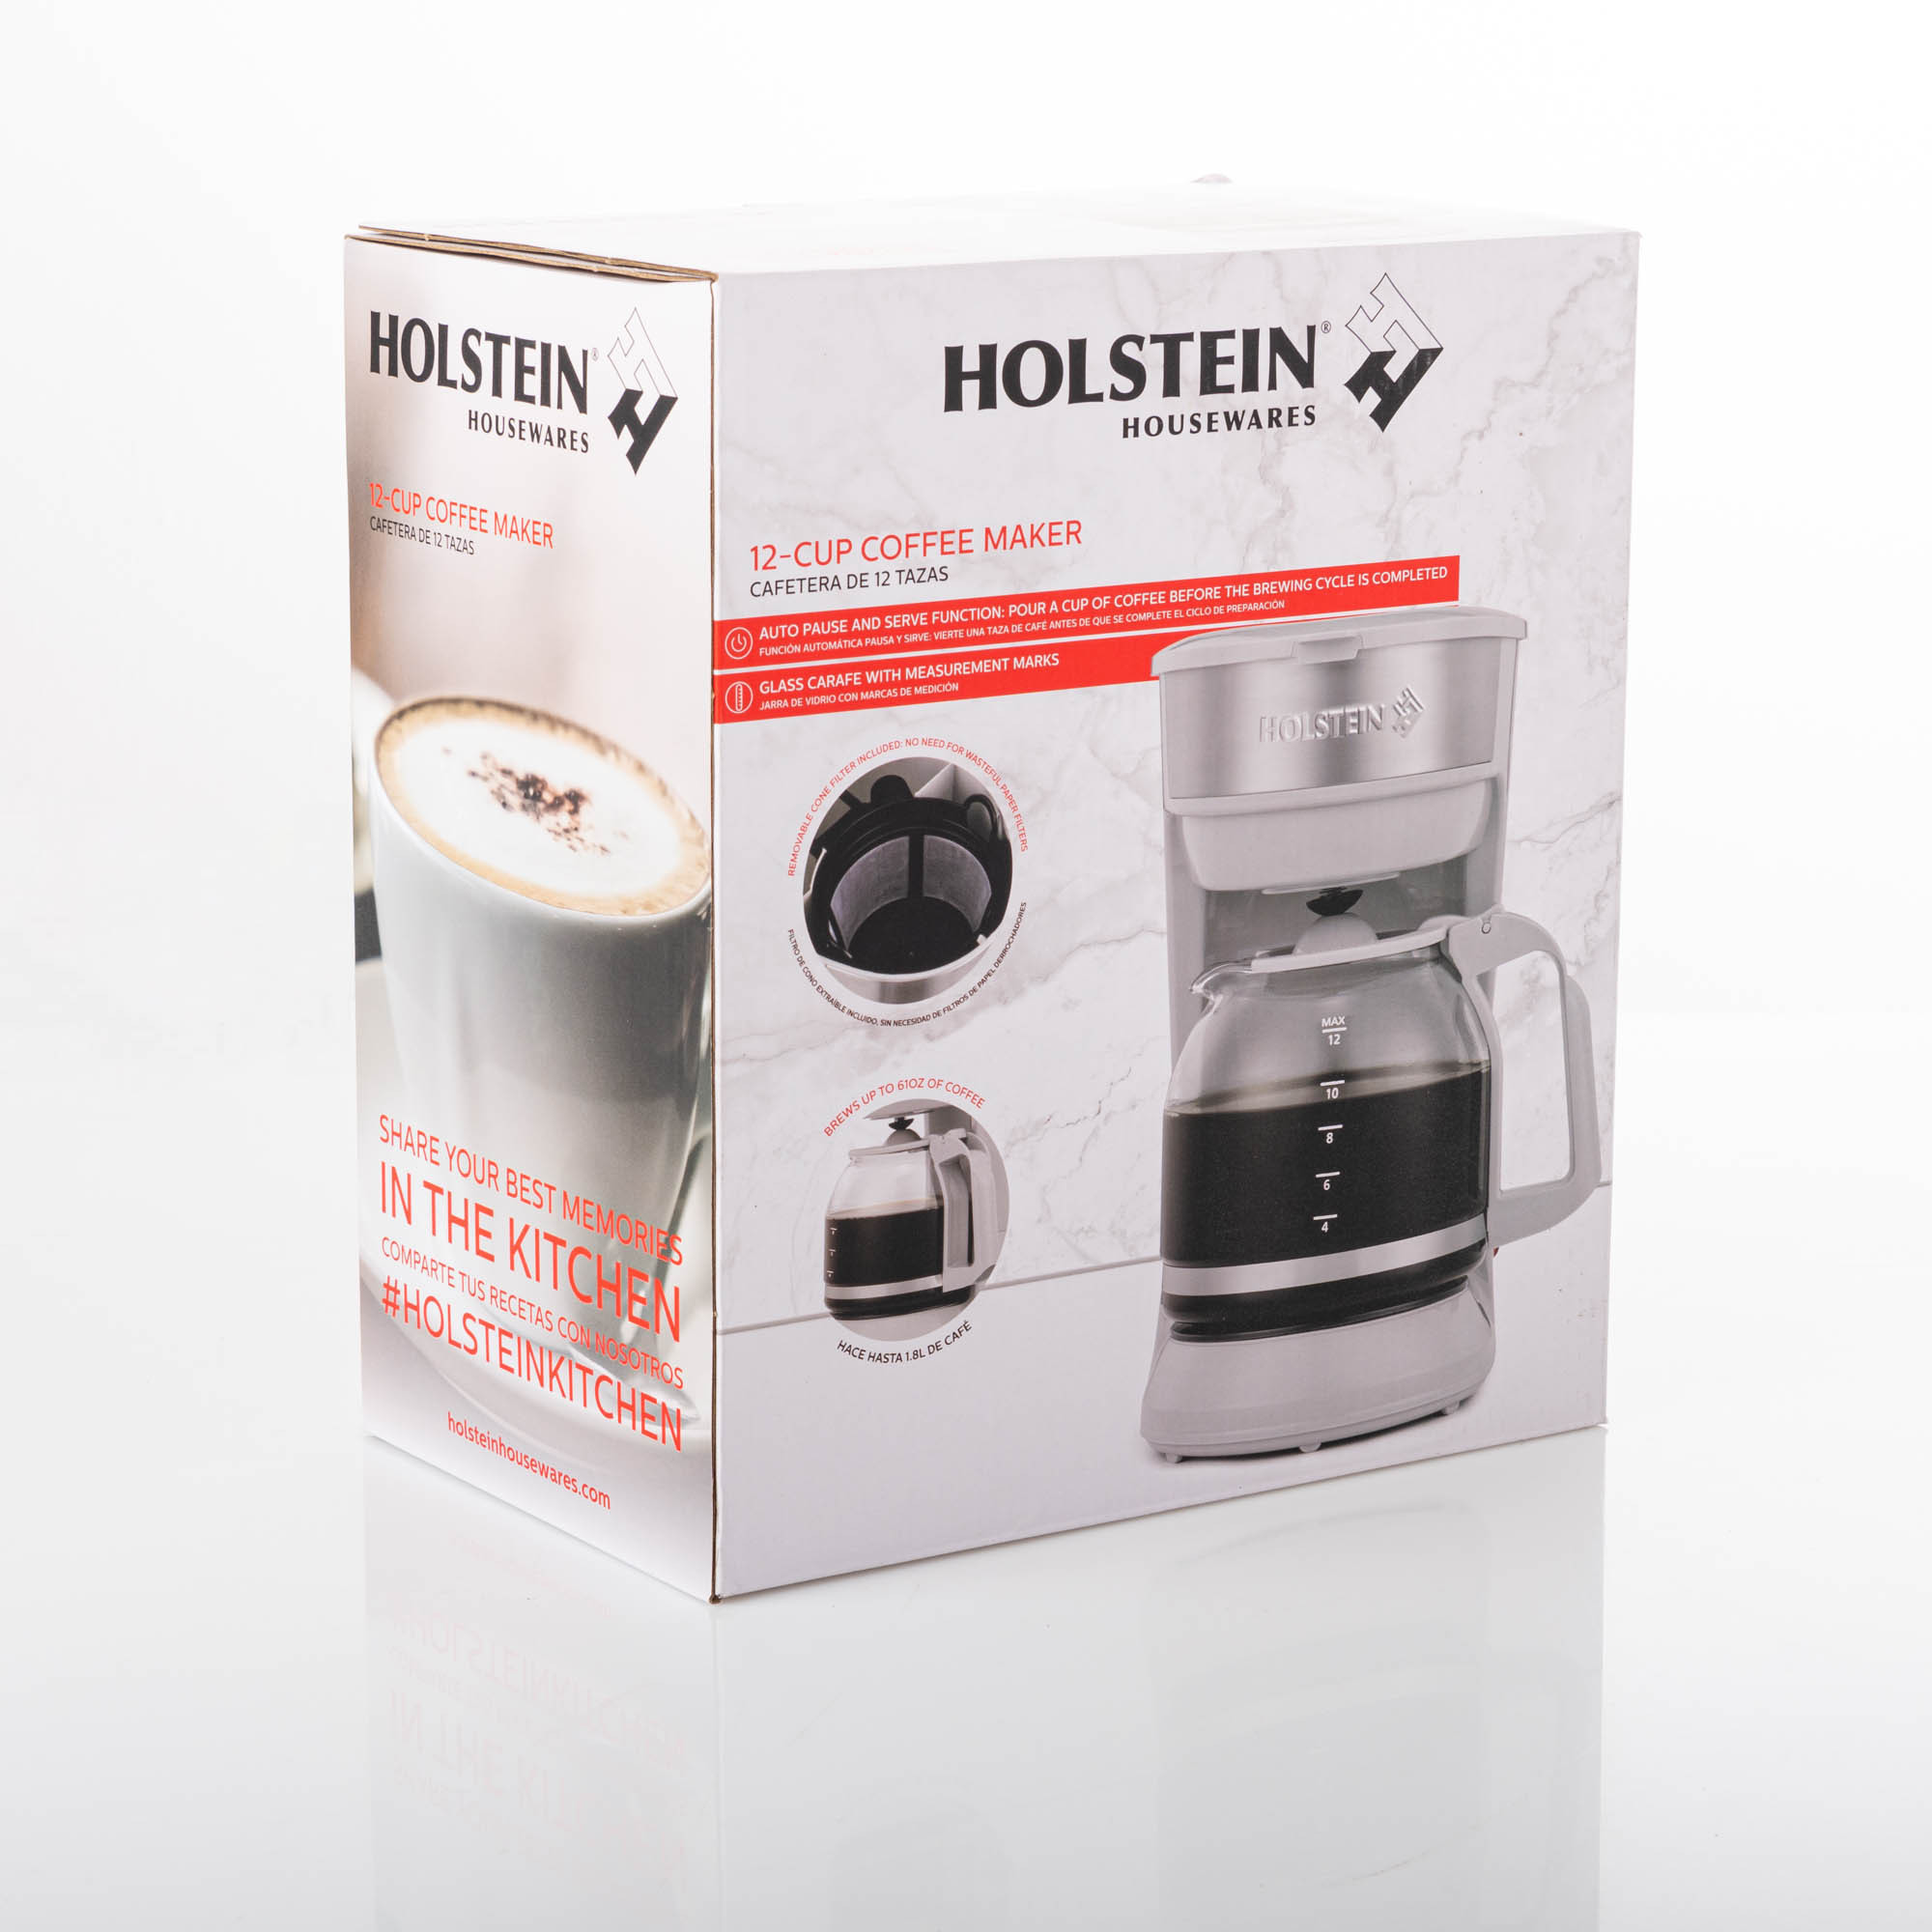 Cafetera con filtro Holstein Housewares 1 taza HOLSTEIN